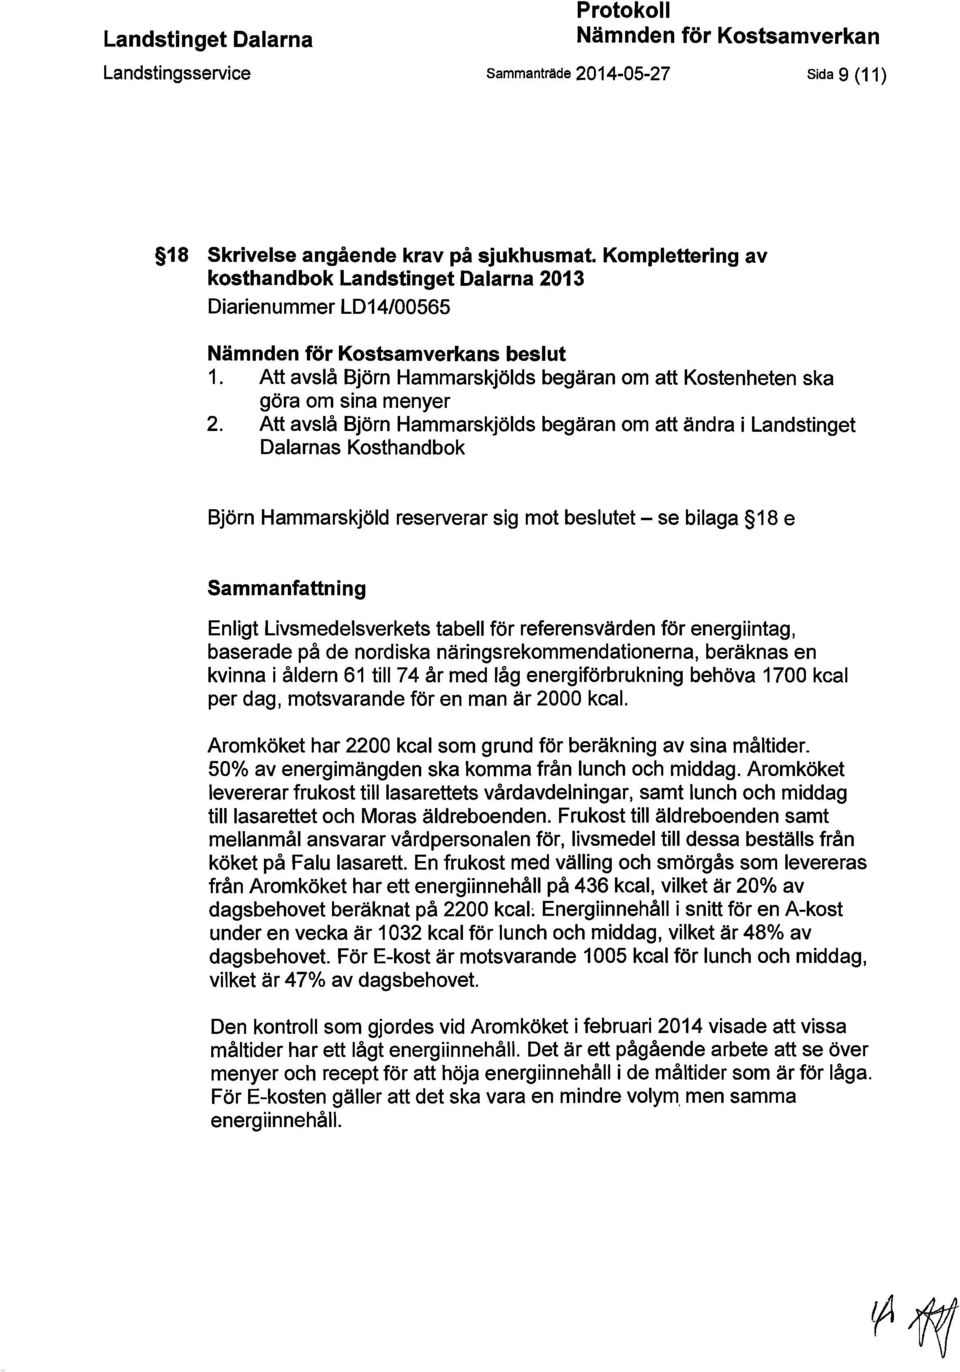 Att avslå Björn Hammarskjölds begäran om att ändra i Landstinget Dalarnas Kosthandbok Björn Hammarskjöld reserverar sig mot beslutet - se bilaga 18 e Sammanfattning Enligt Livsmedelsverkets tabell